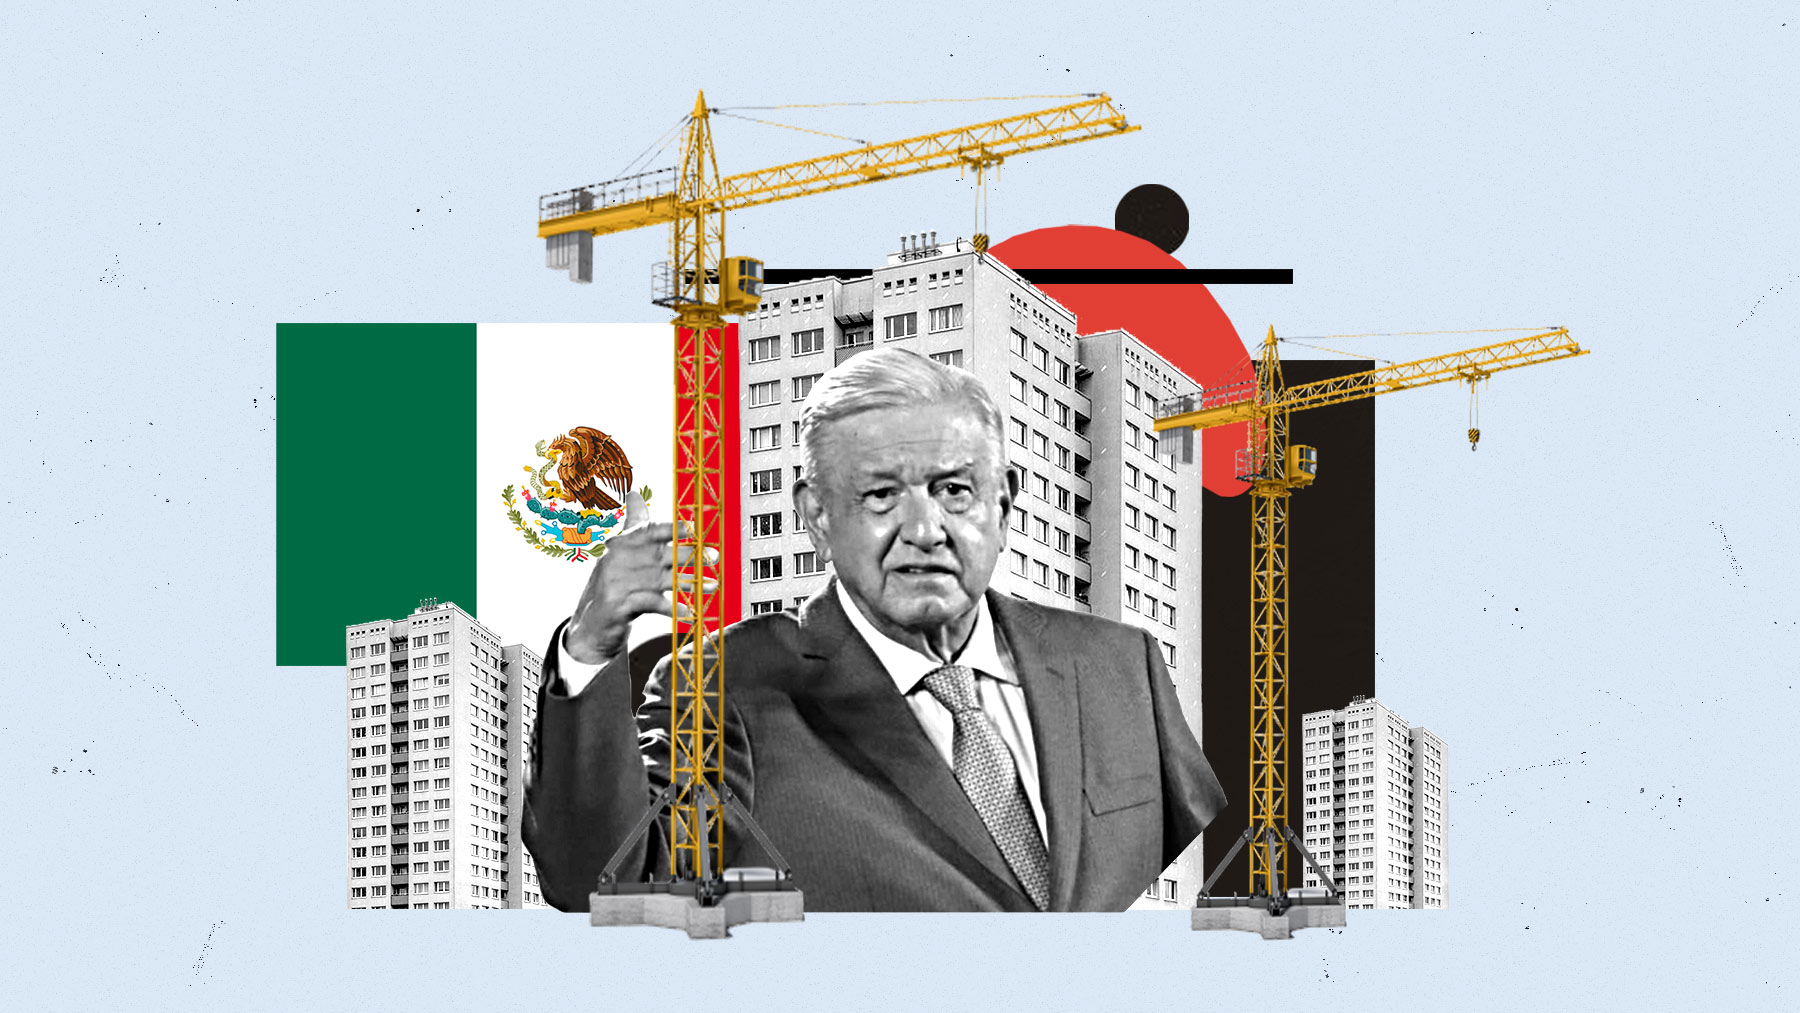 El presidente mexicano acusó hace apenas un año a varias compañías españolas de abusar de su pueblo con los precios.